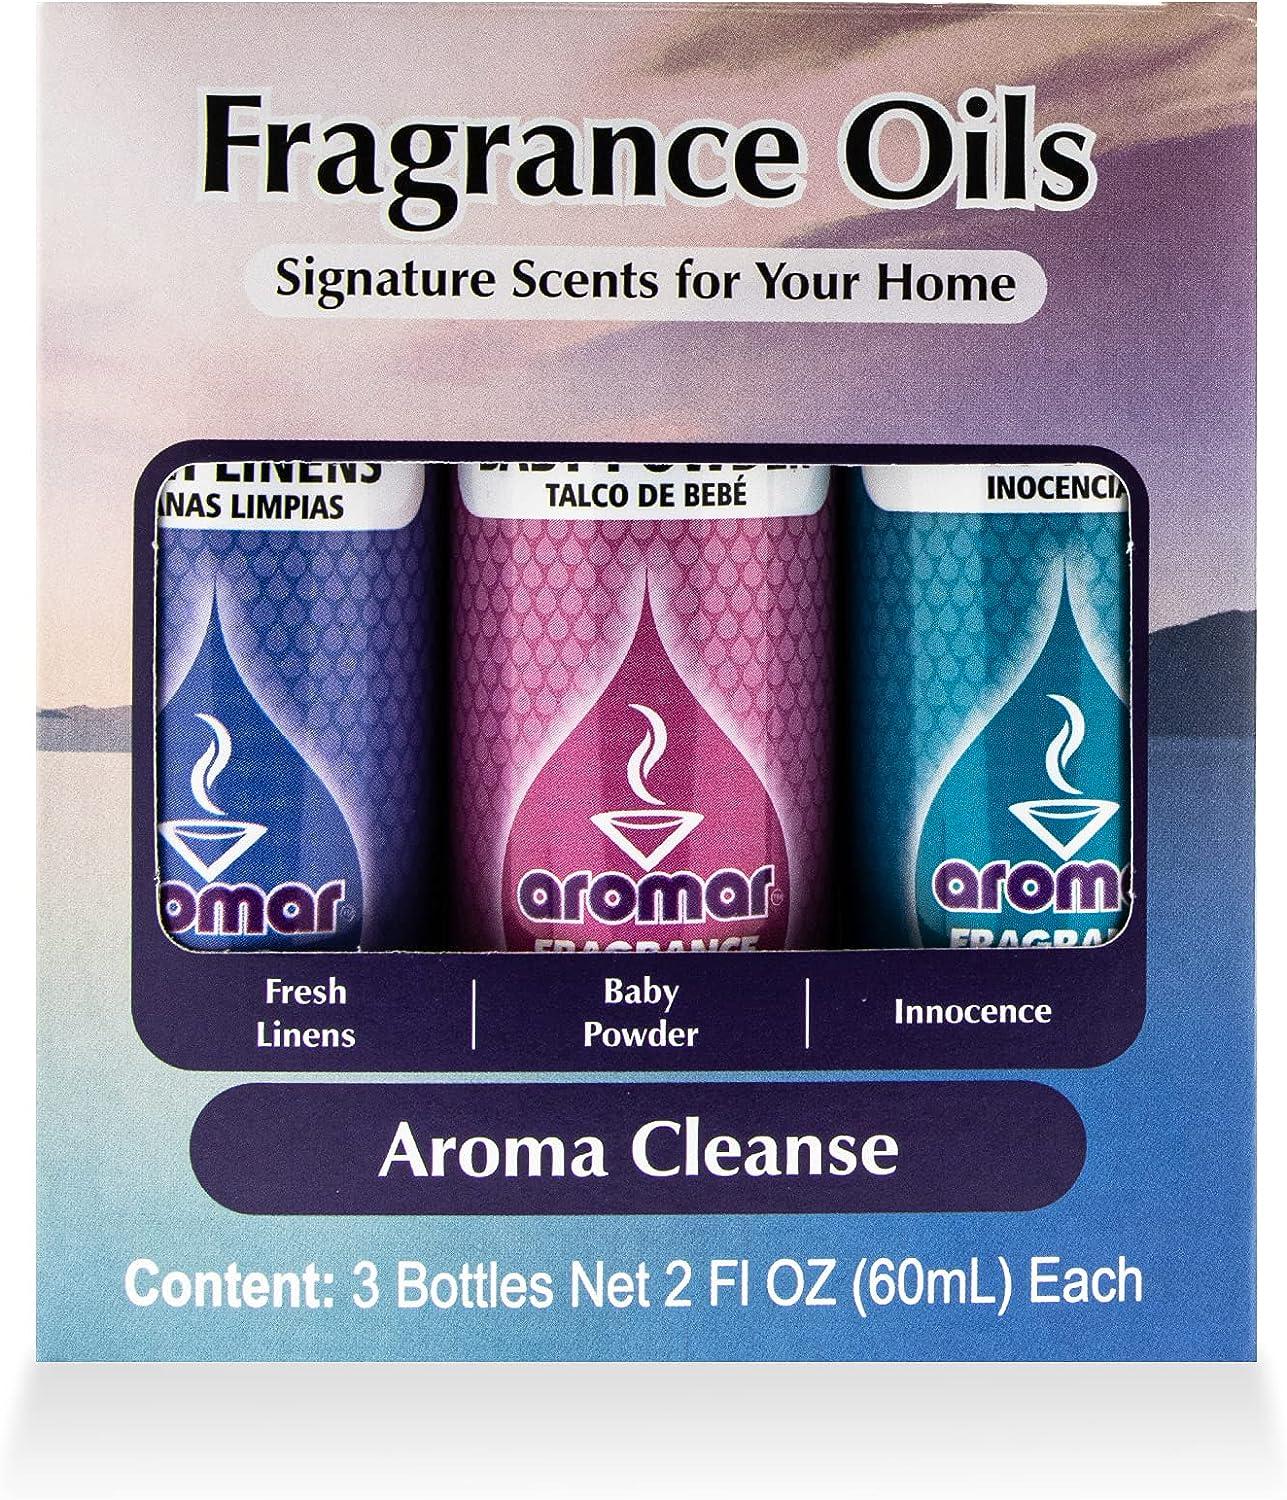 AROMAR Premium Fragrance Oil, Pack of 3 Fresh Linen 2oz. Bottles.